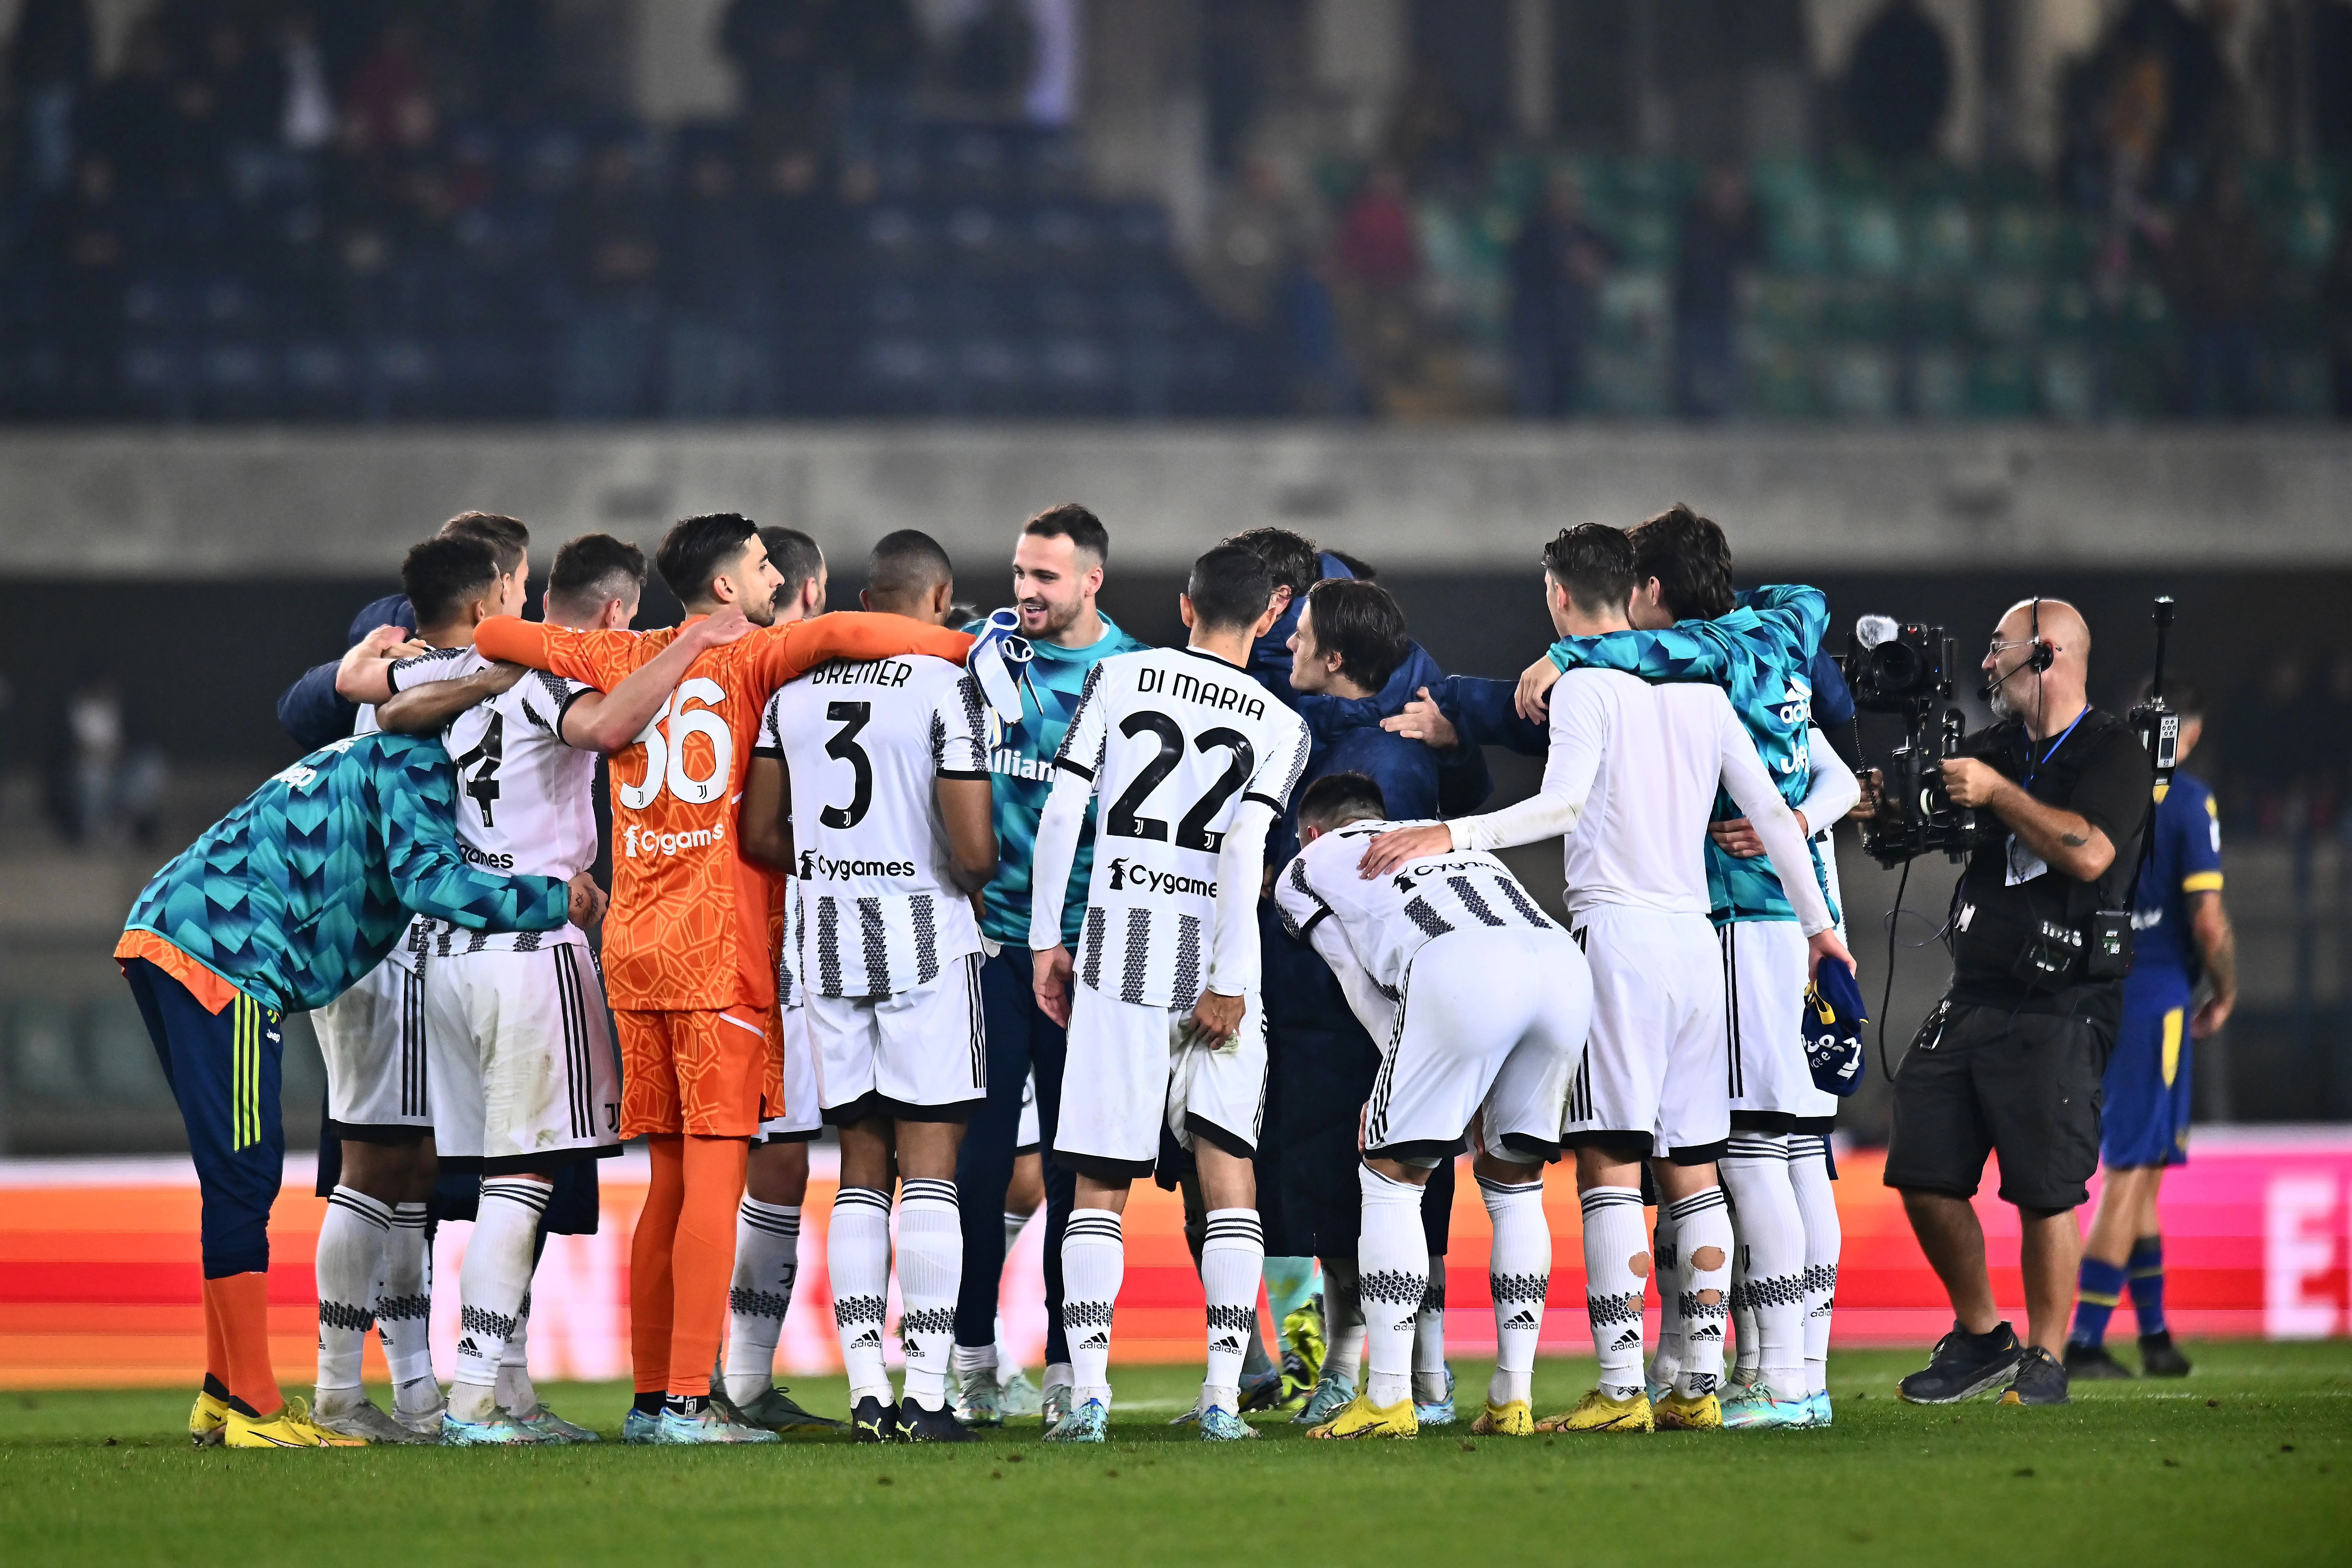 Calciomercato, la Juventus si muove per rinforzare la difesa, ma serve prima cedere: l’indiziato in uscita